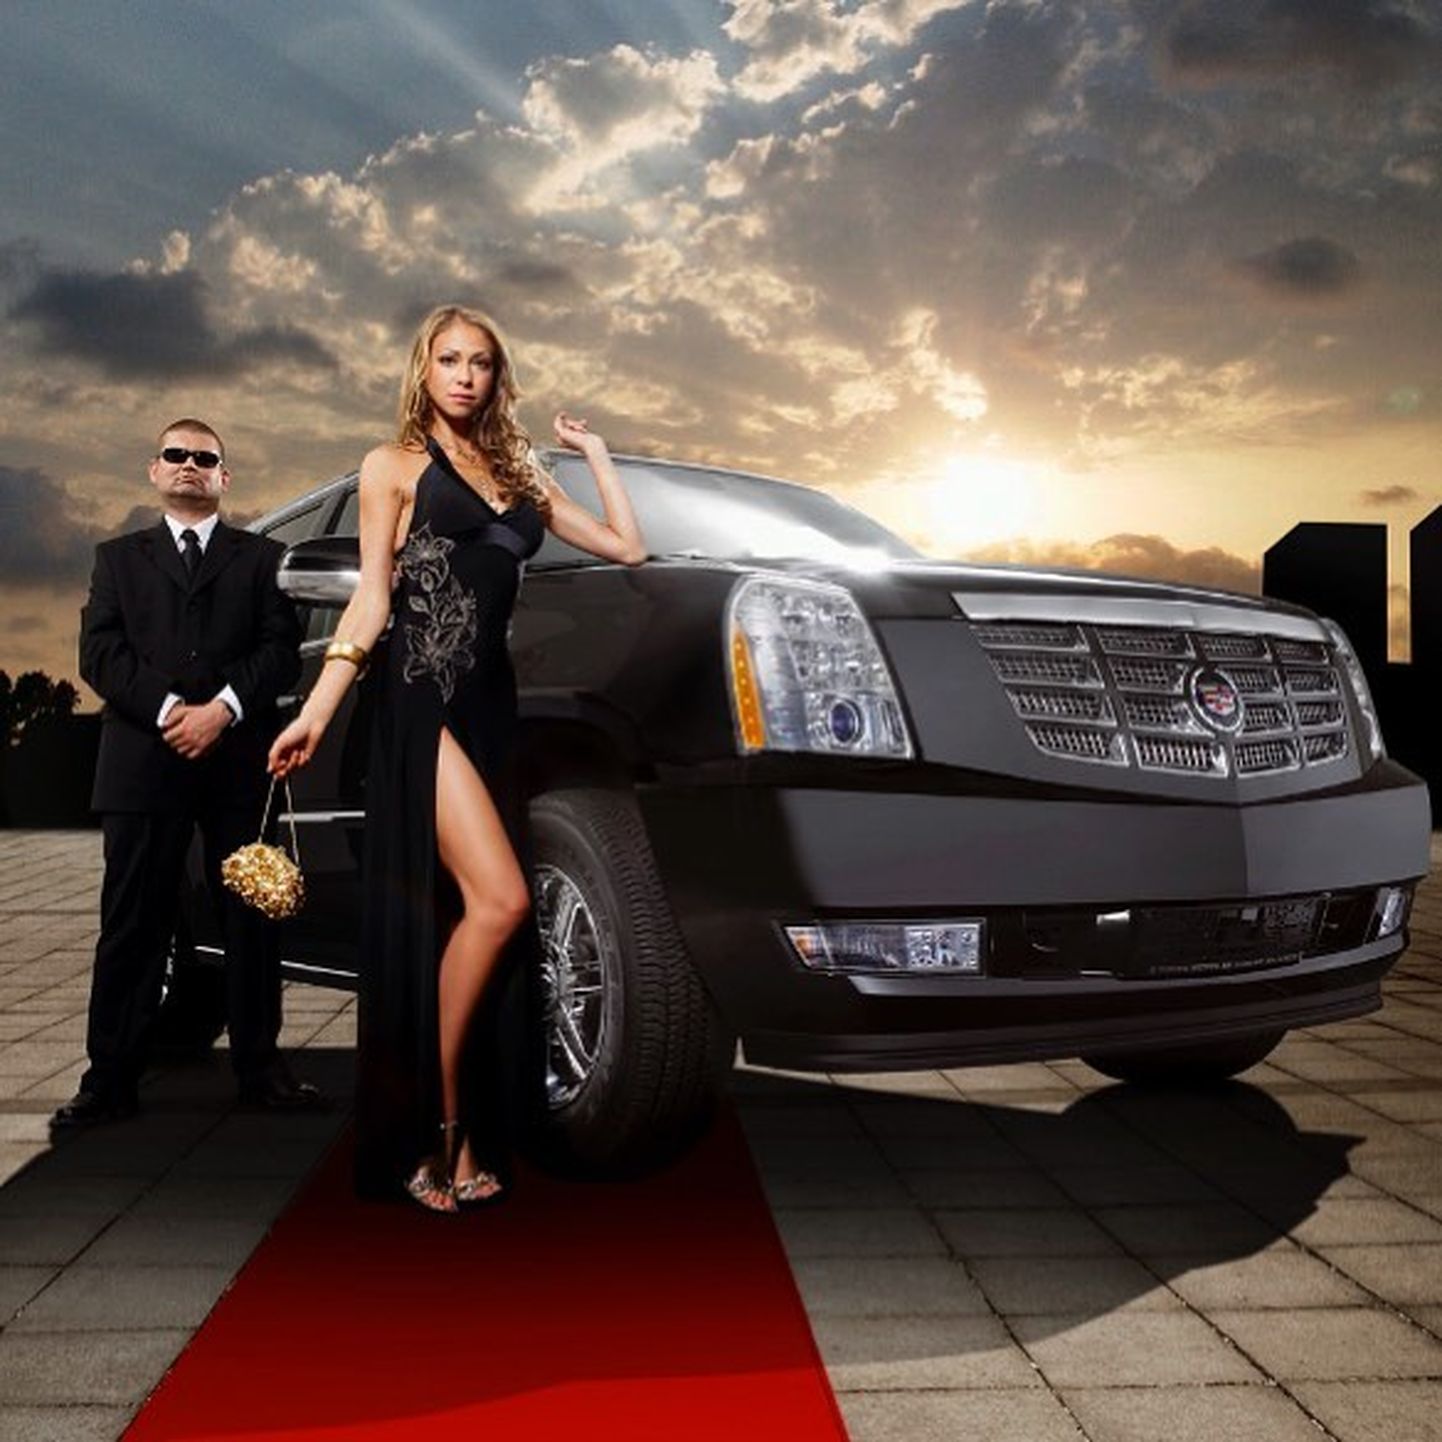 Heti Tulve reklaamis 2007. aastal uut Cadillaci.